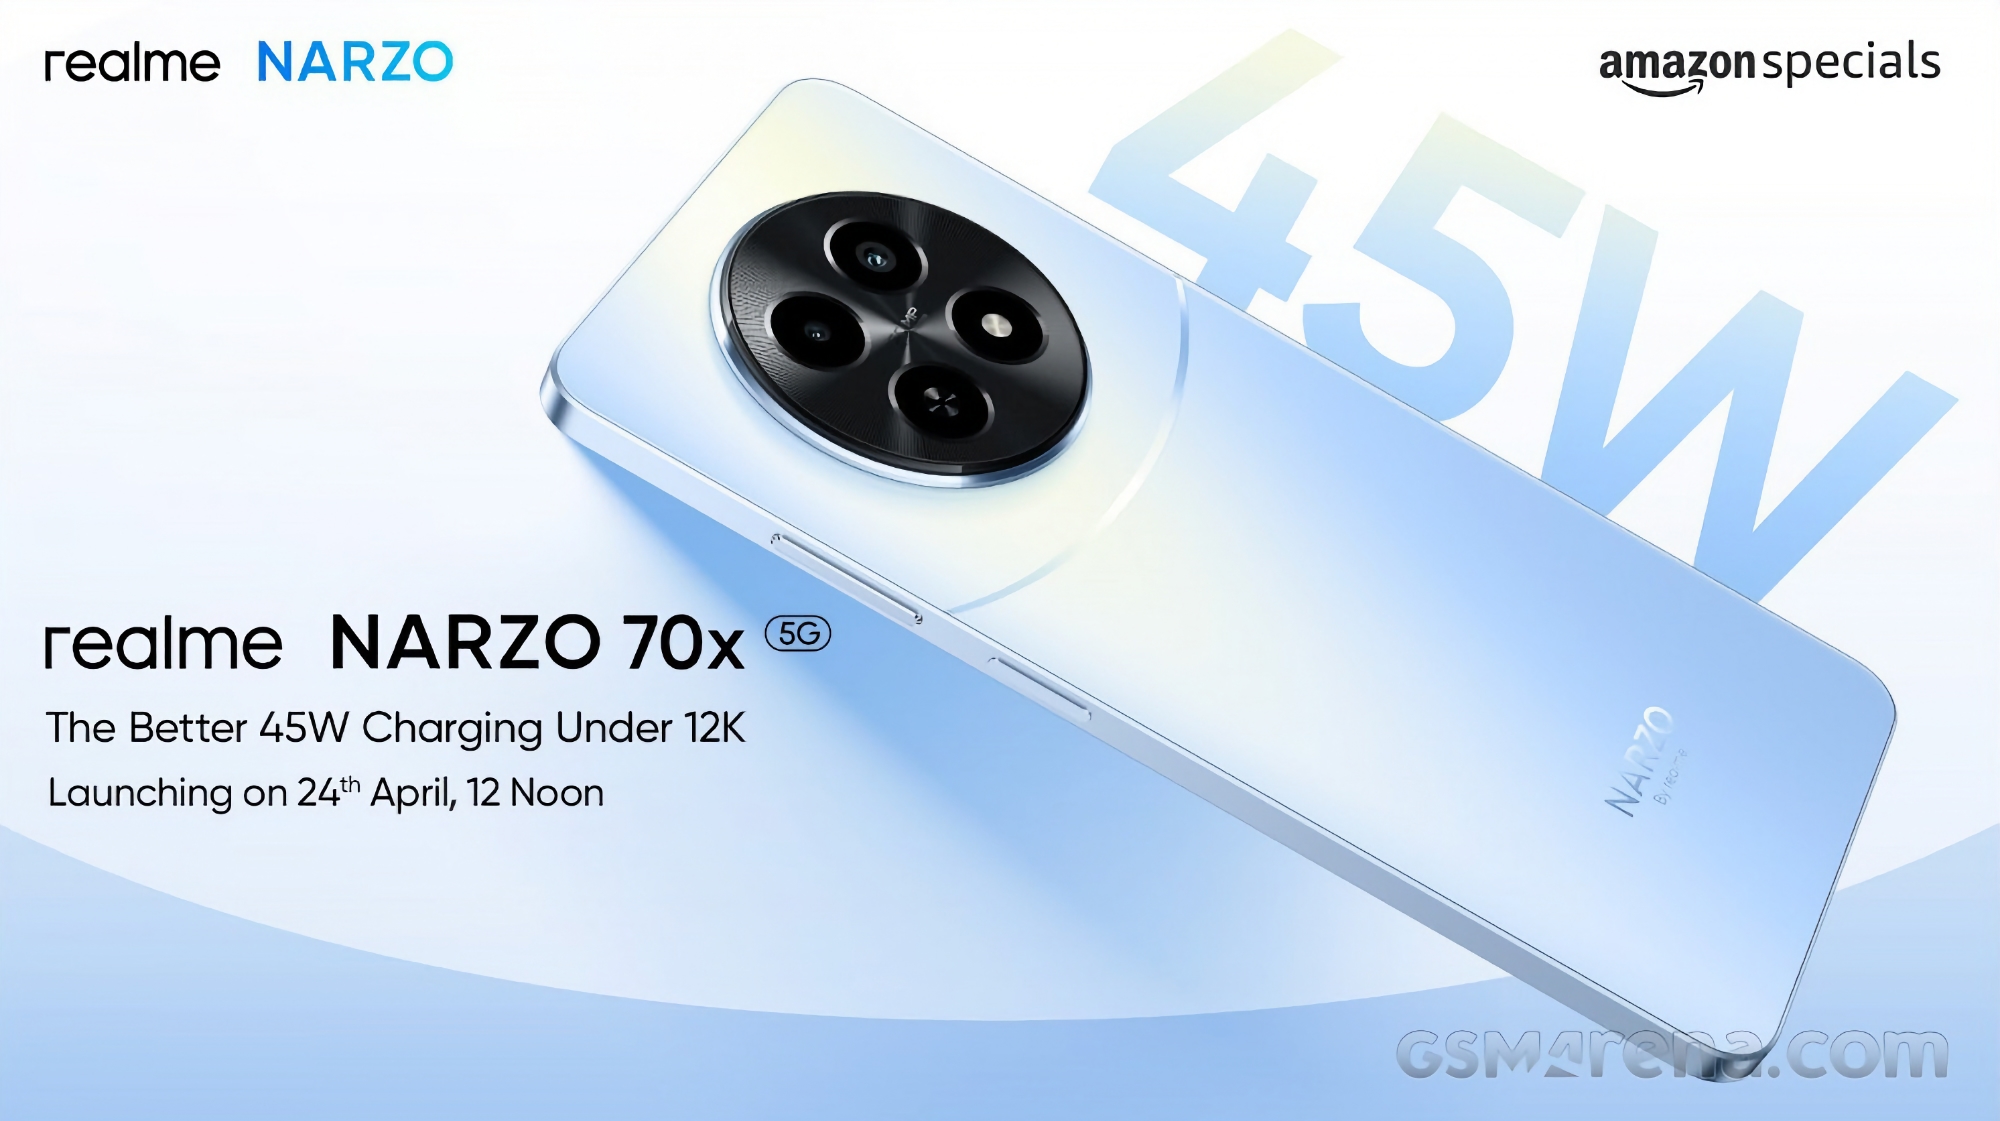 Narzo 70x 5G realme Narzo 70x avec appareil photo 50 MP et chargeur 45W sera lancé le 24 avril